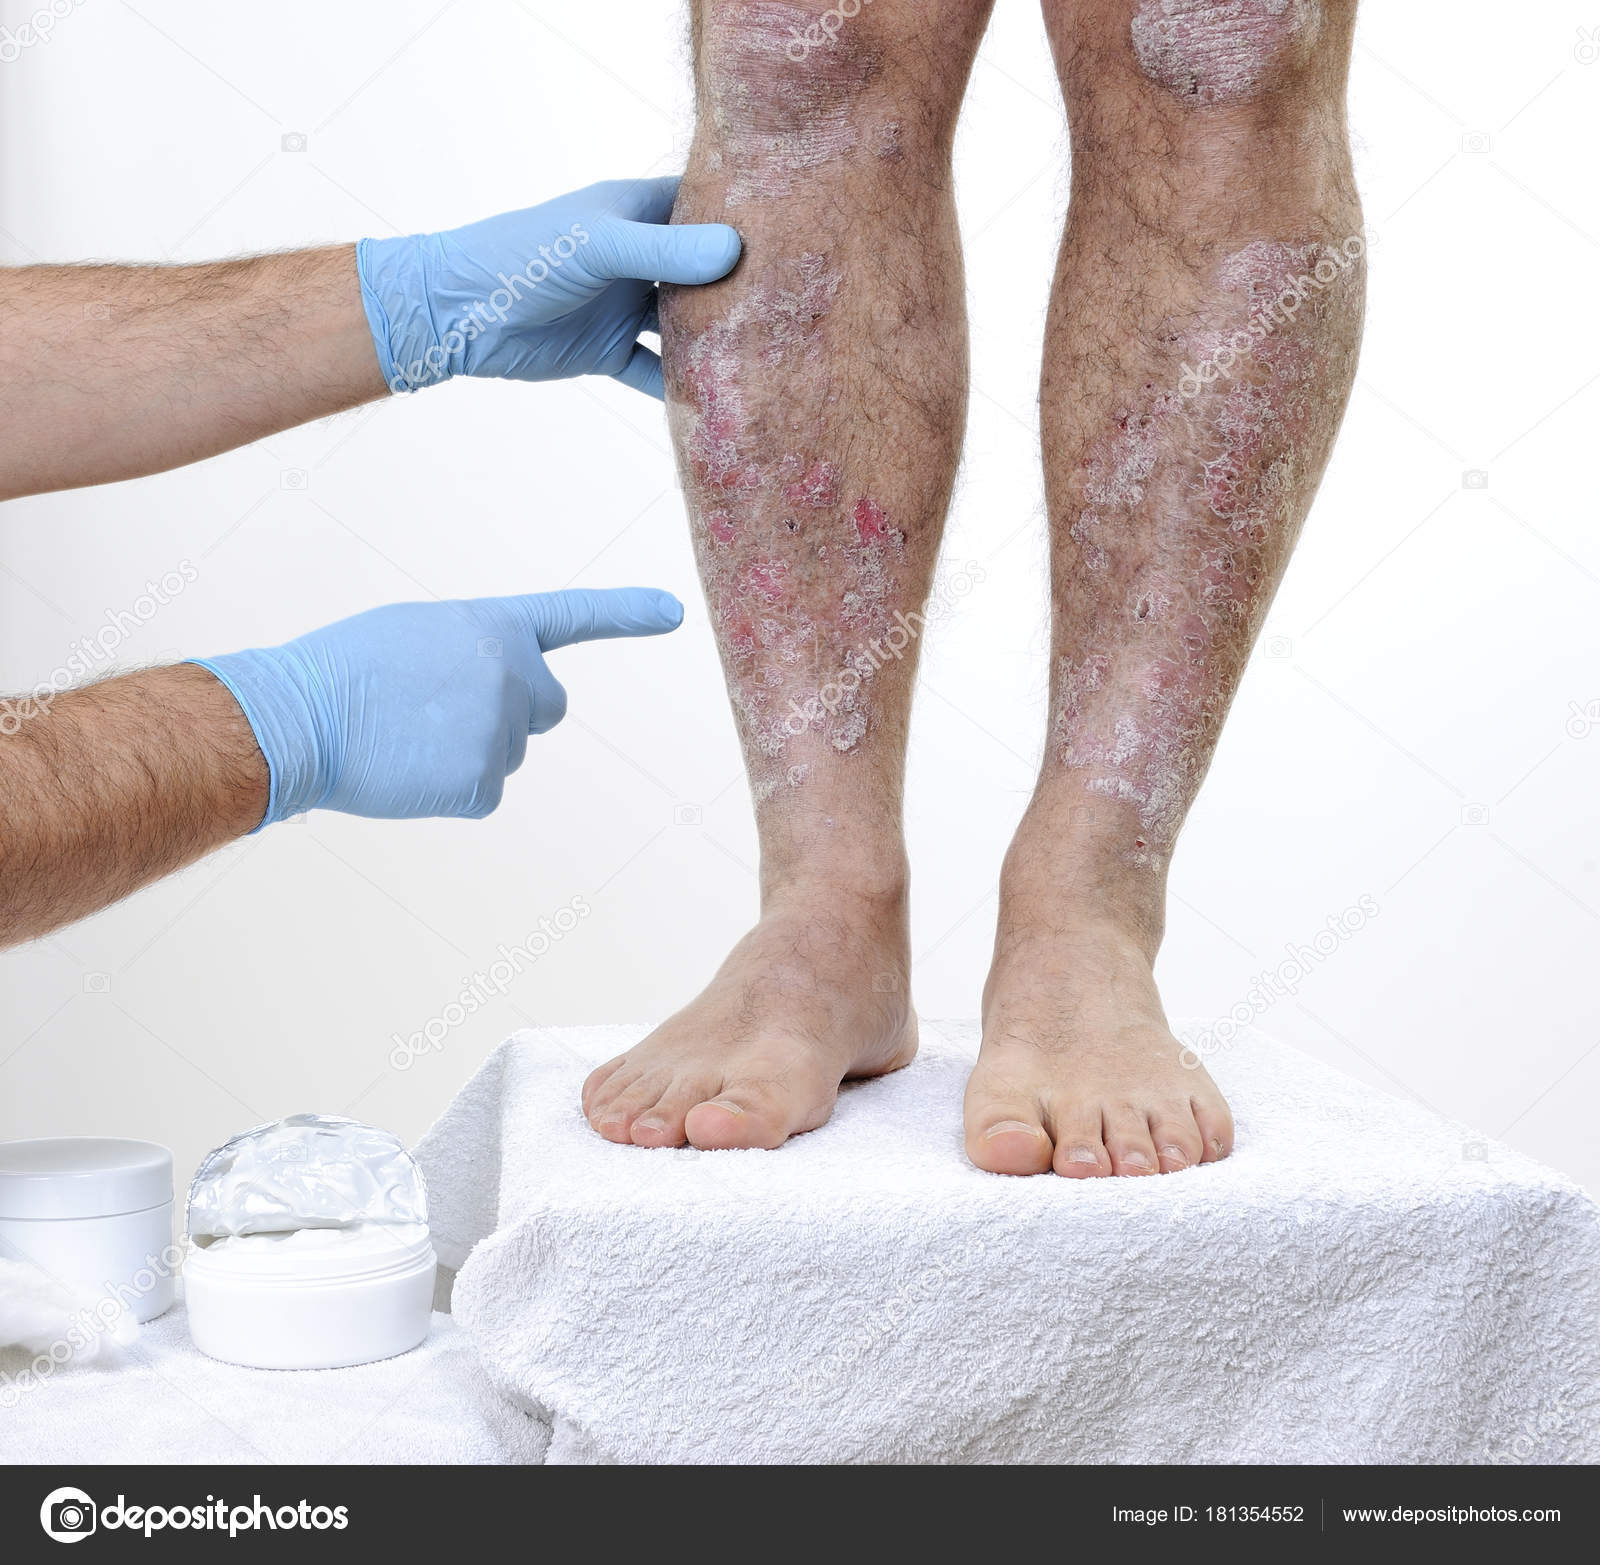 Hudlægen en voksen mand med psoriasis i — Stock-foto © francescomoufotografo #181354552